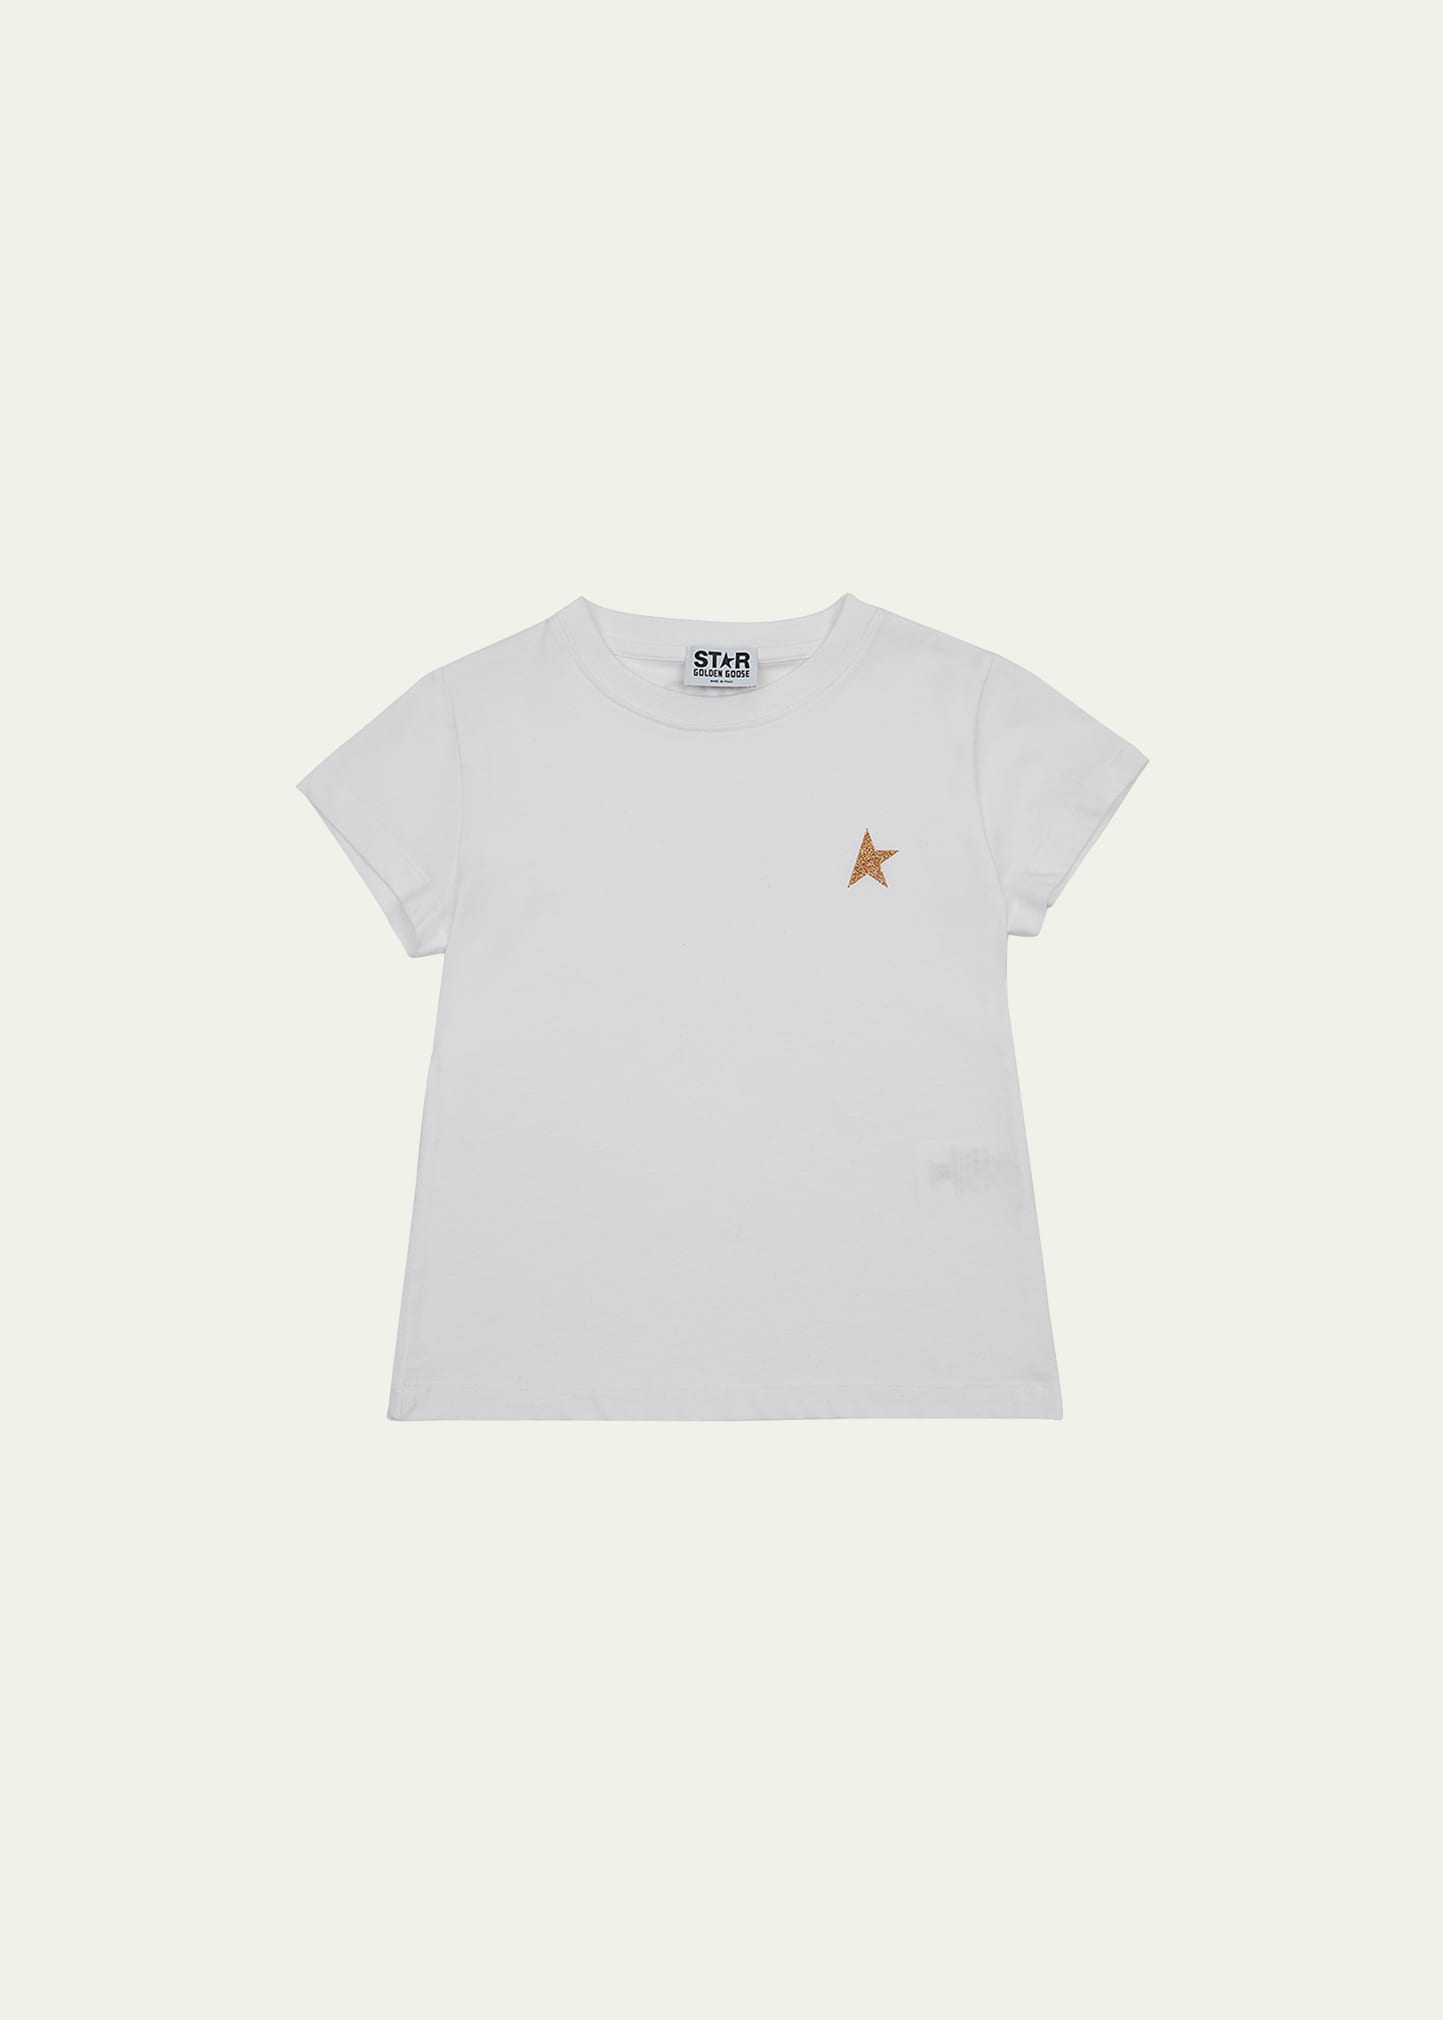 Golden Goose Kids' Girl's Star T-shirt In White/gold